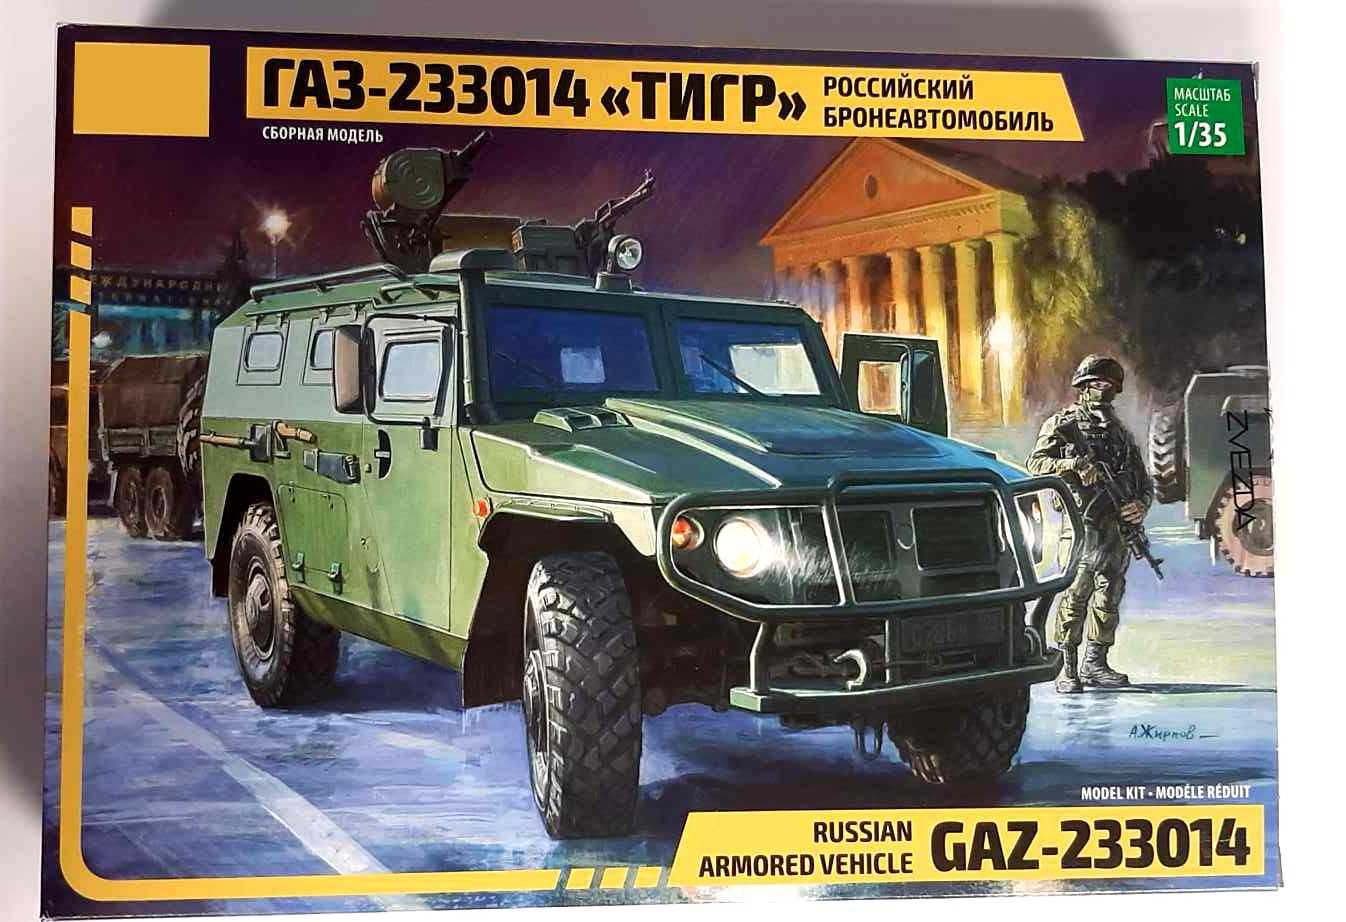 Model plastikowy GAZ-233014 Tiger 1/35 ZVEZDA NOWY